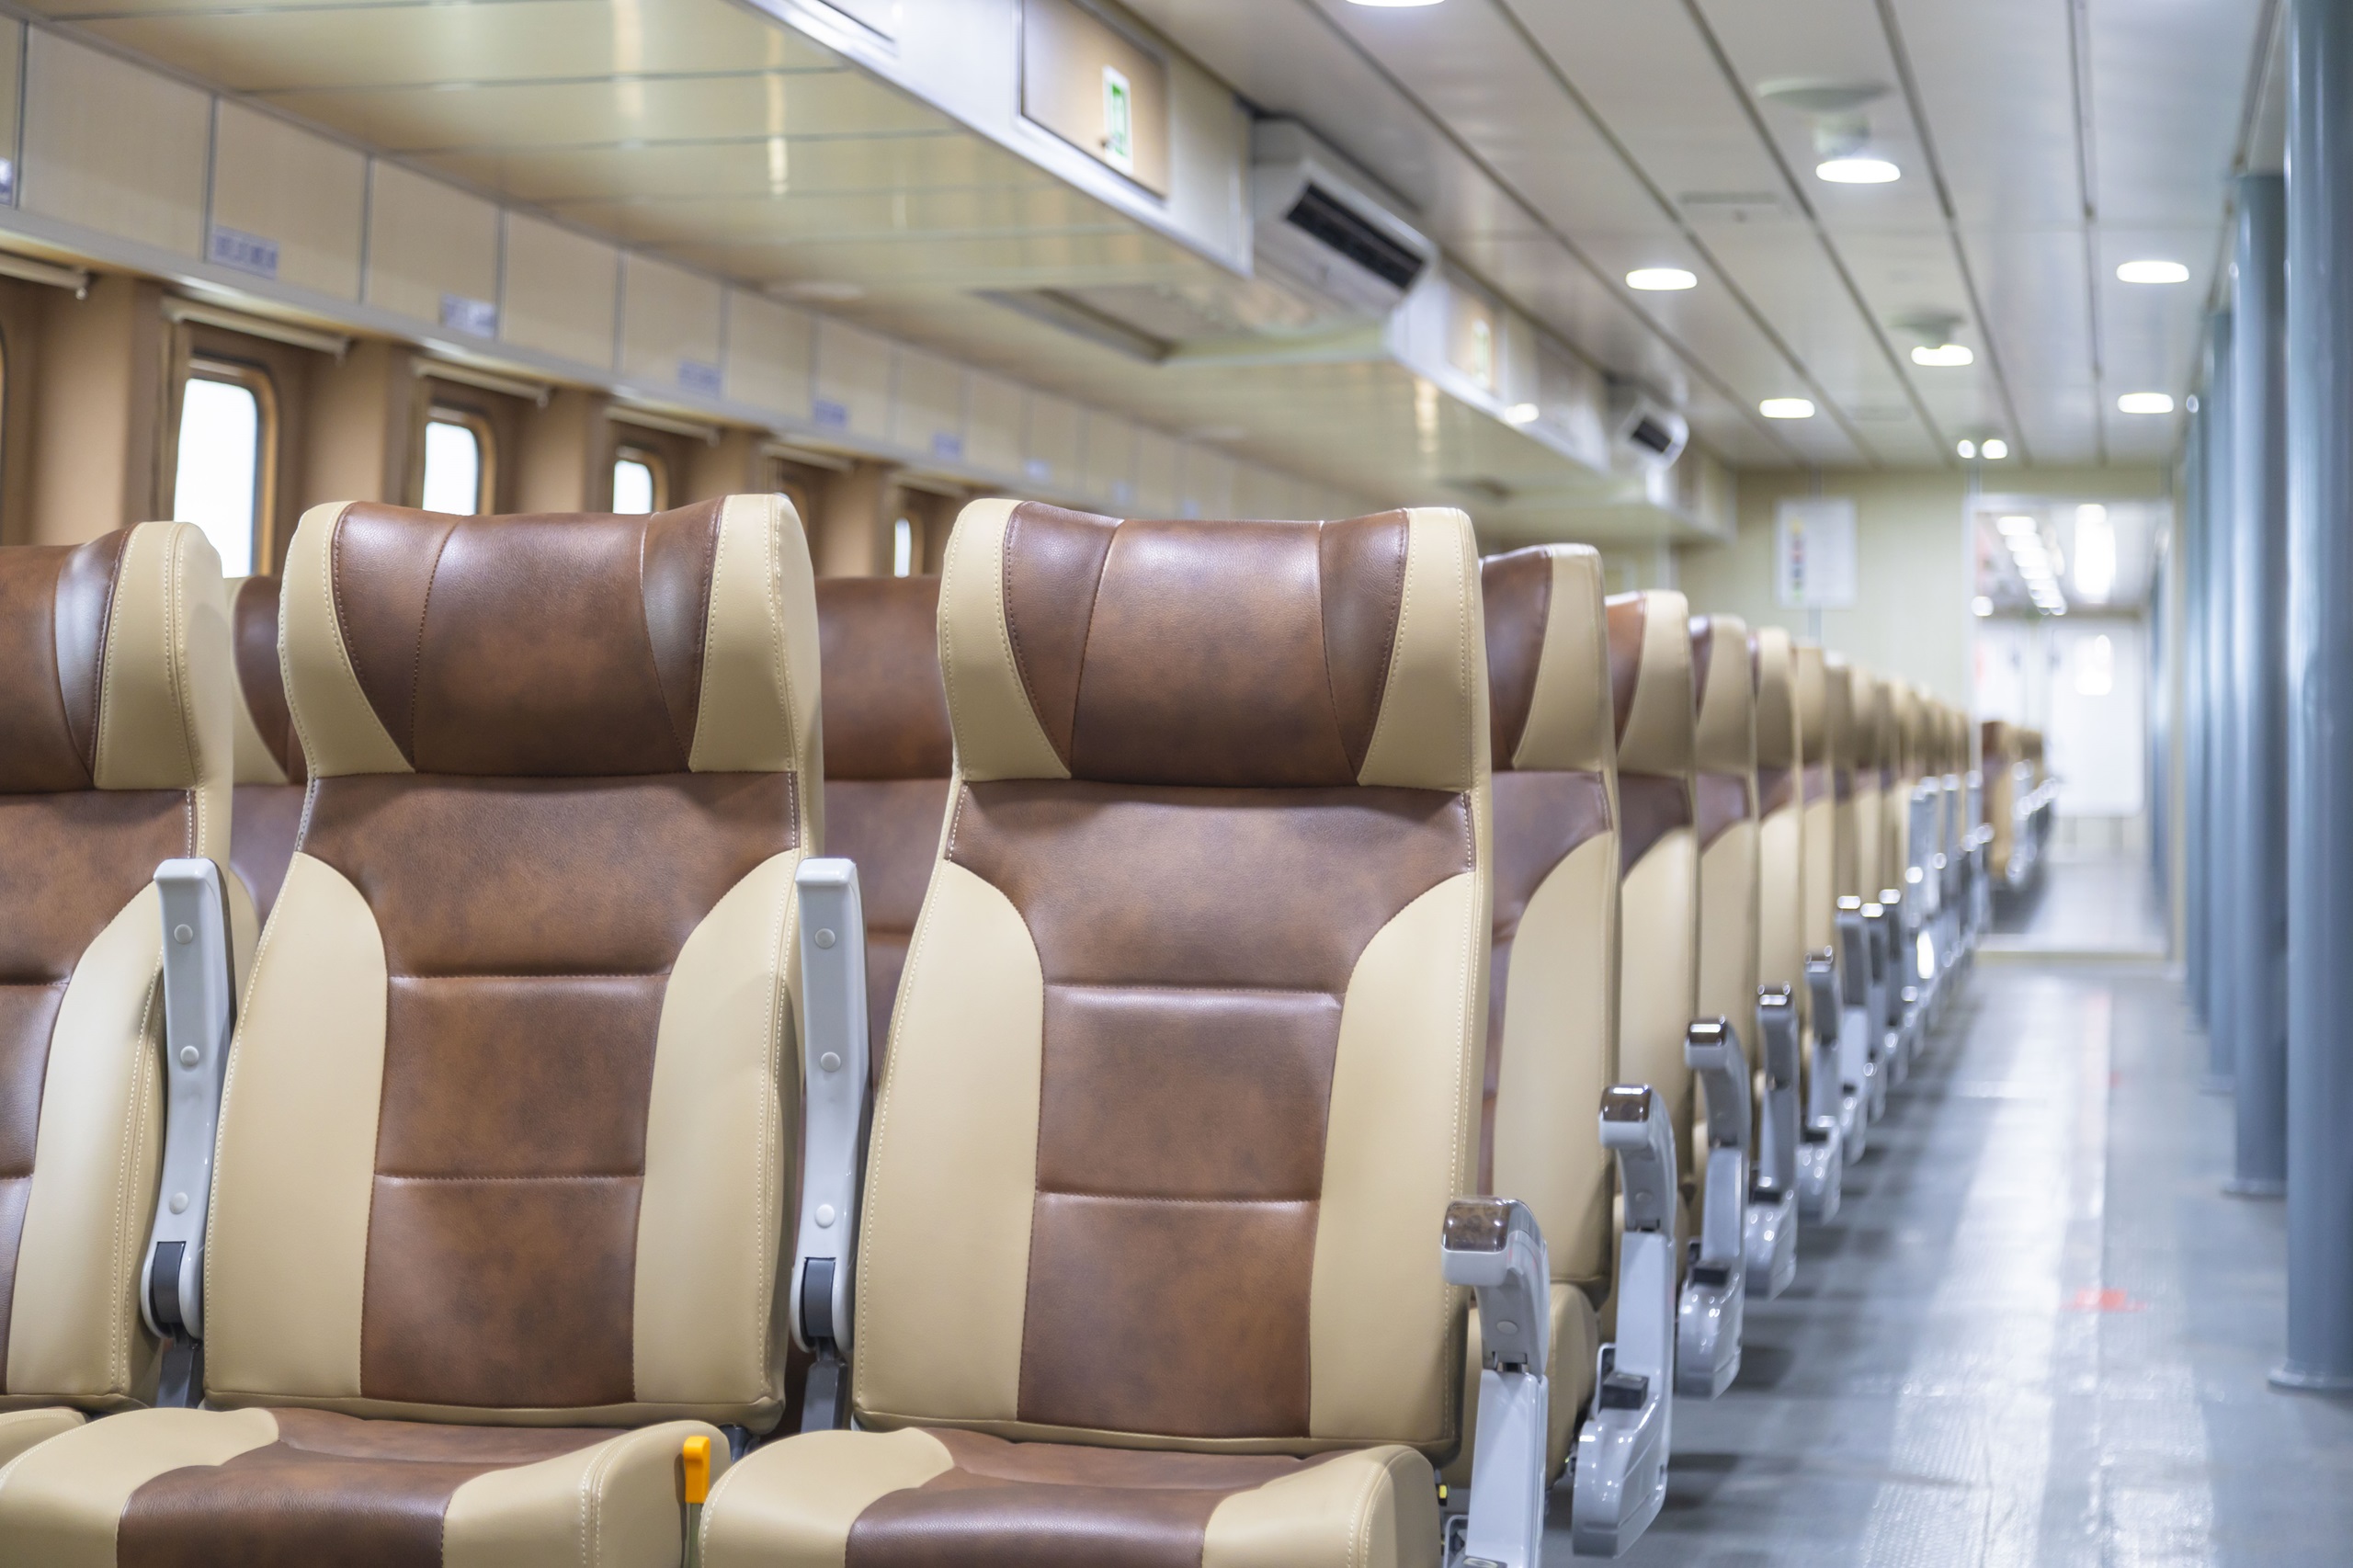 Khoang ghế ECO phổ thông sang trọng với ghế và vách ốp da, sàn chống ồn